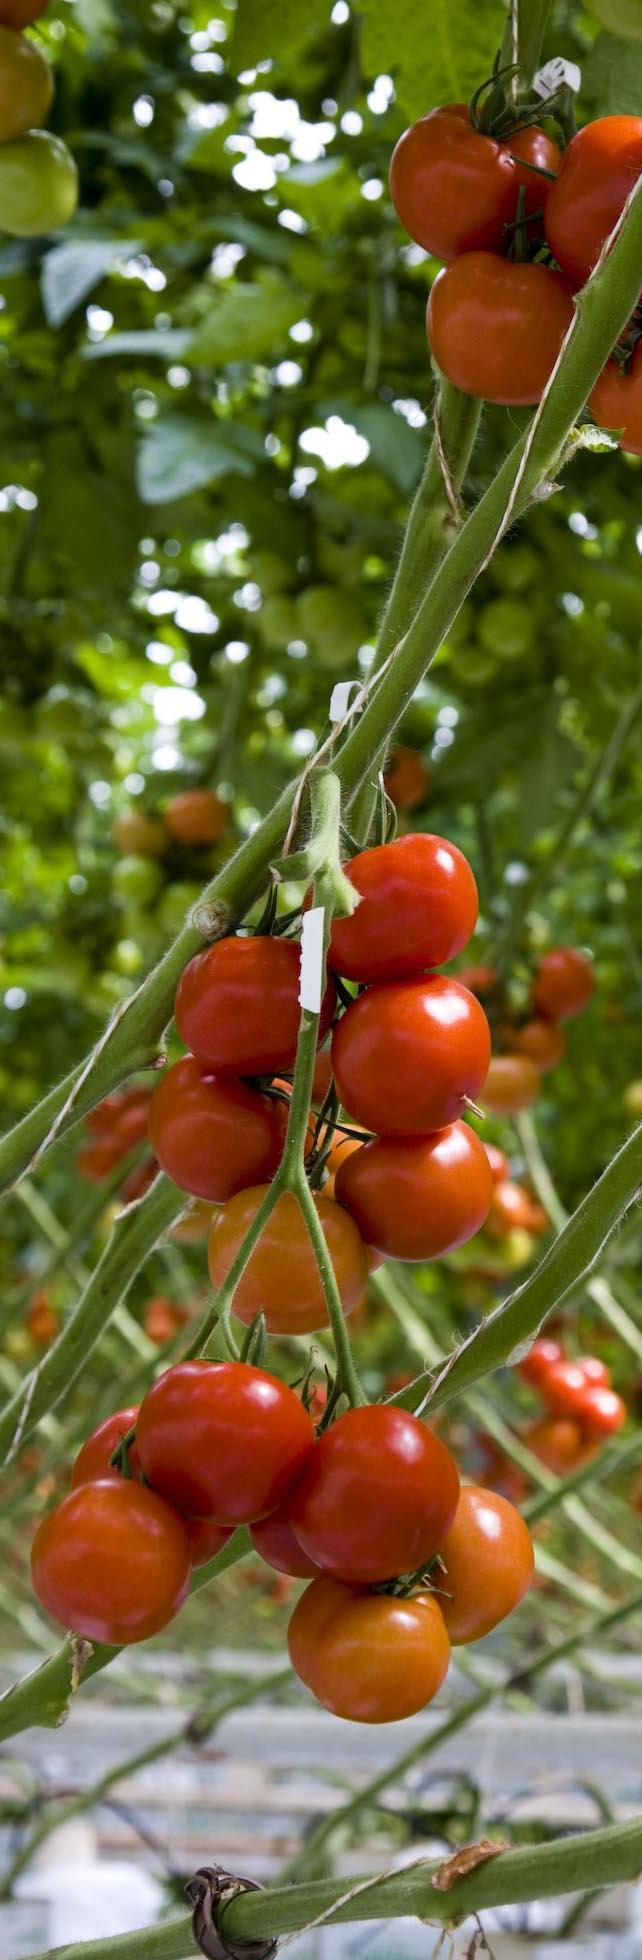 Temperatur o Temperatur er den viktigste enkeltfaktor for å opprettholde kvalitet og holdbarhet i frukt og grønt etter høsting.